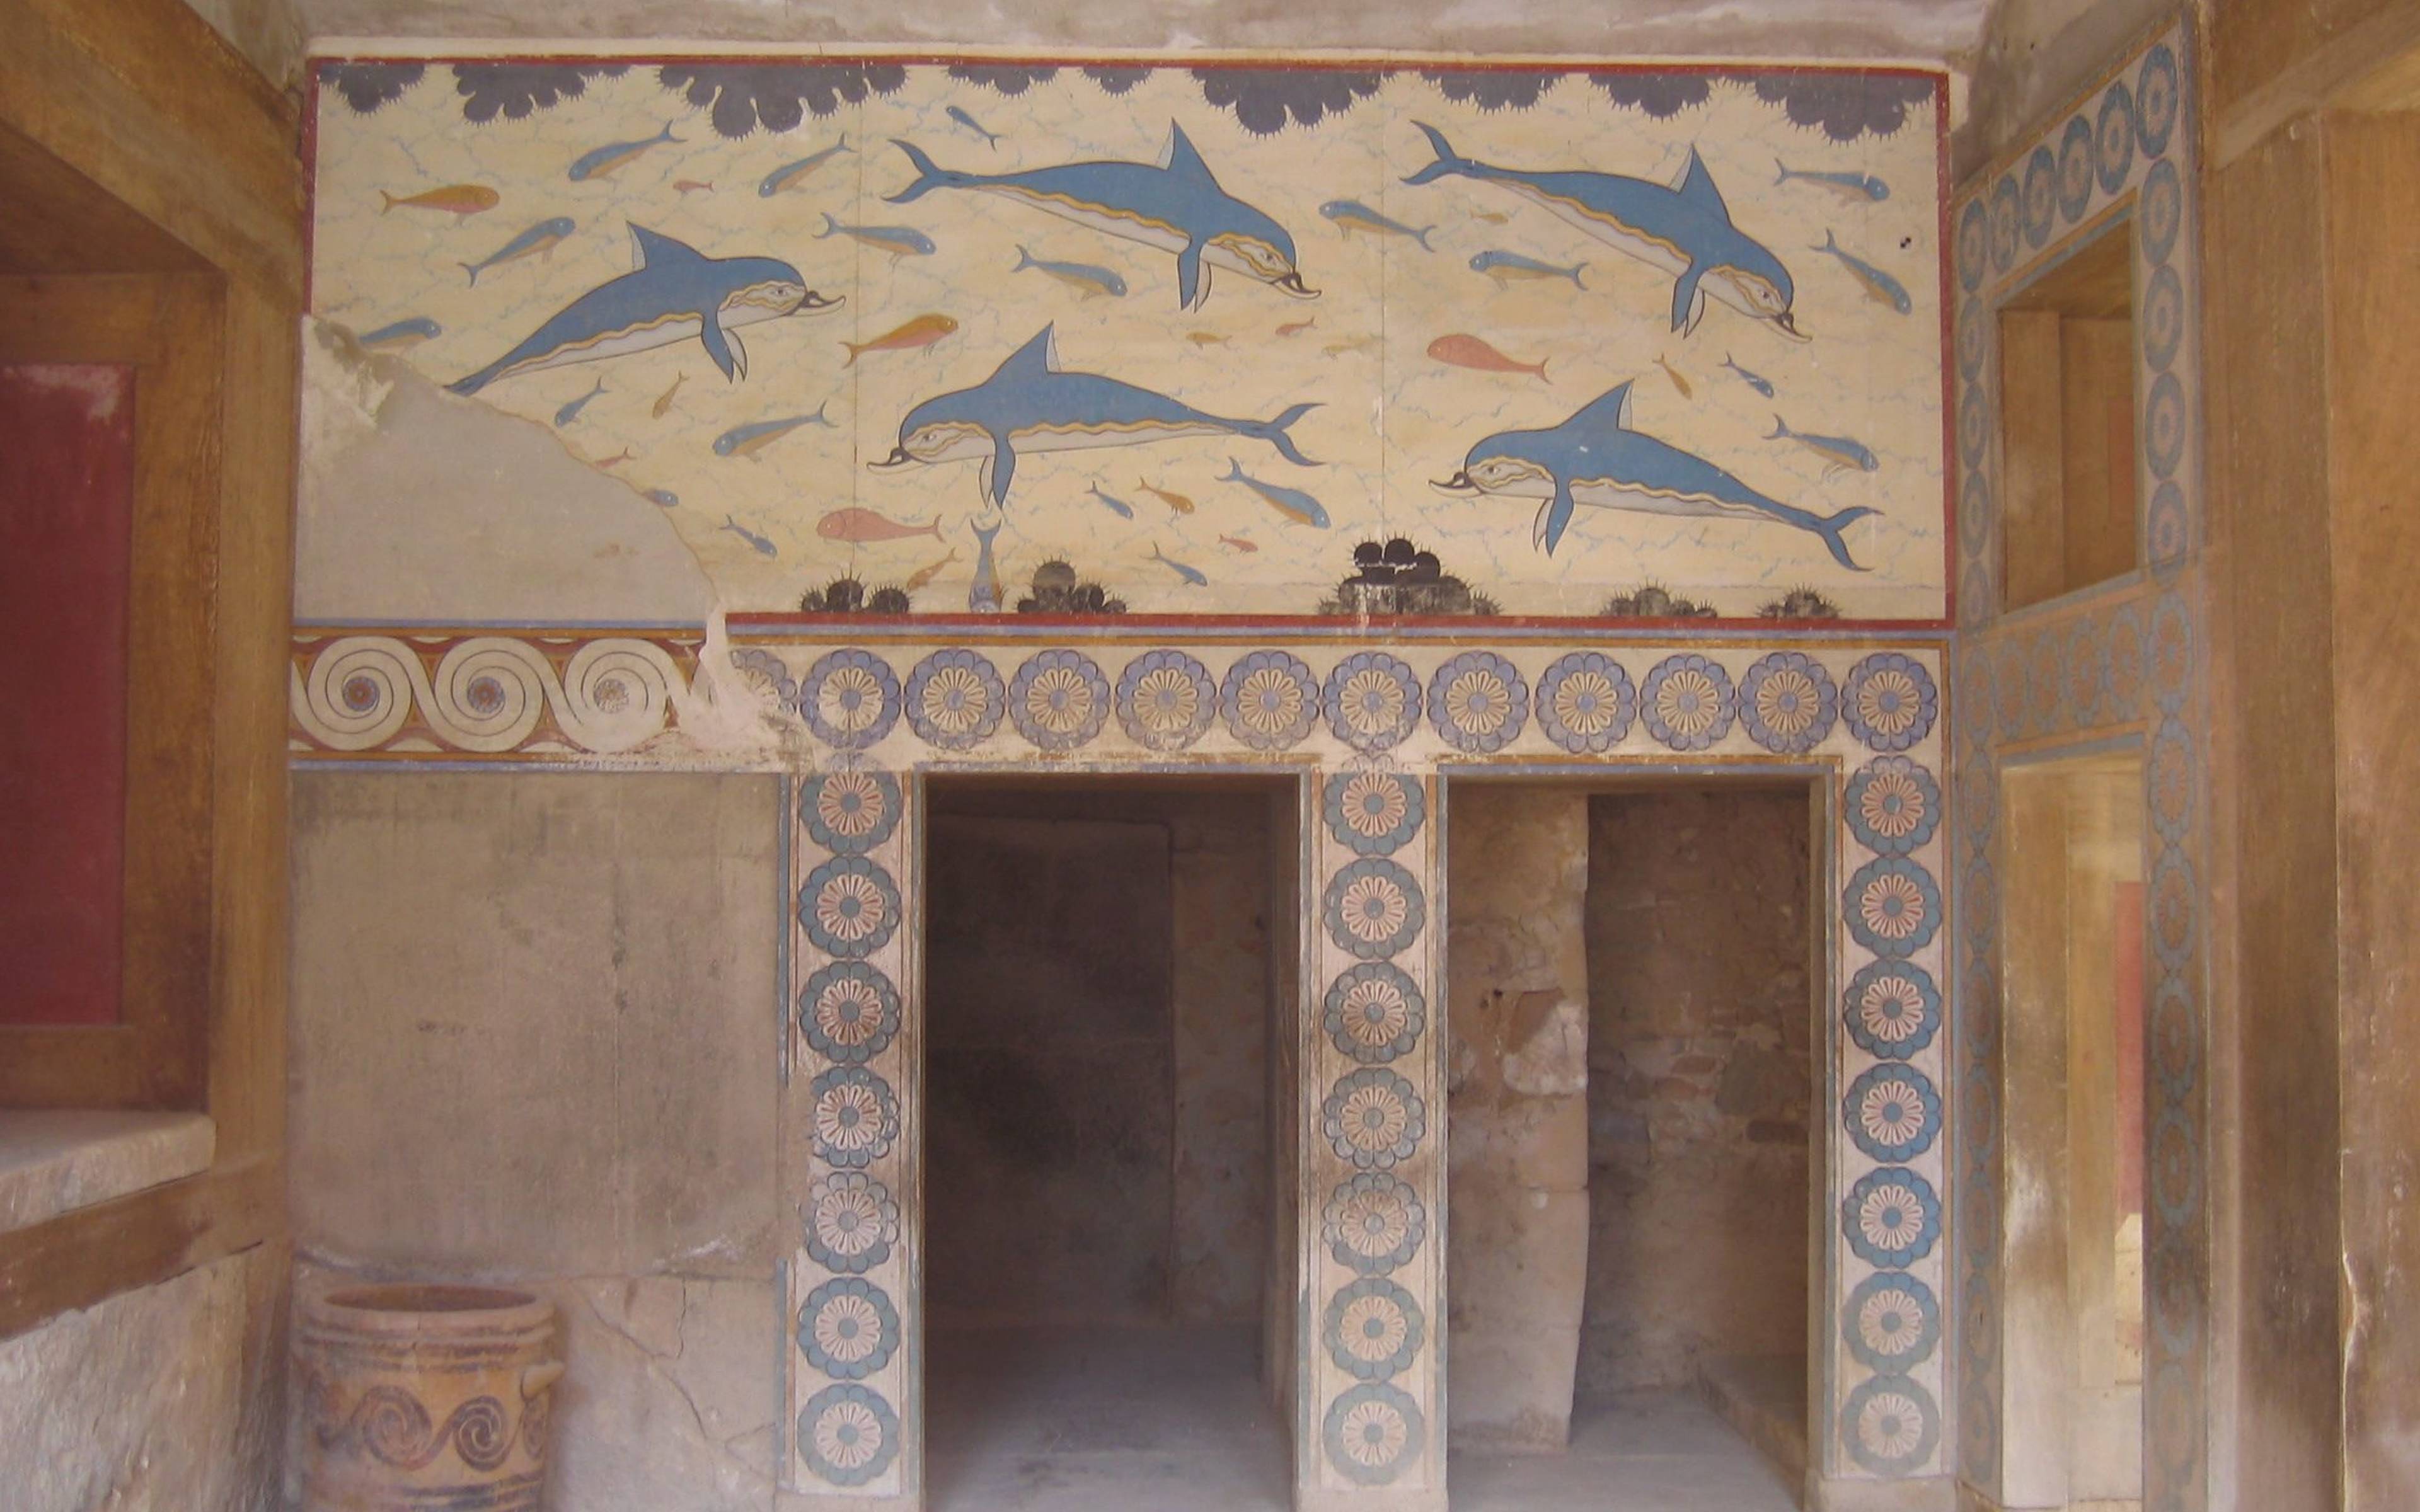 Palazzo di knosso, citta’ di Heraklion e museo archeologico 